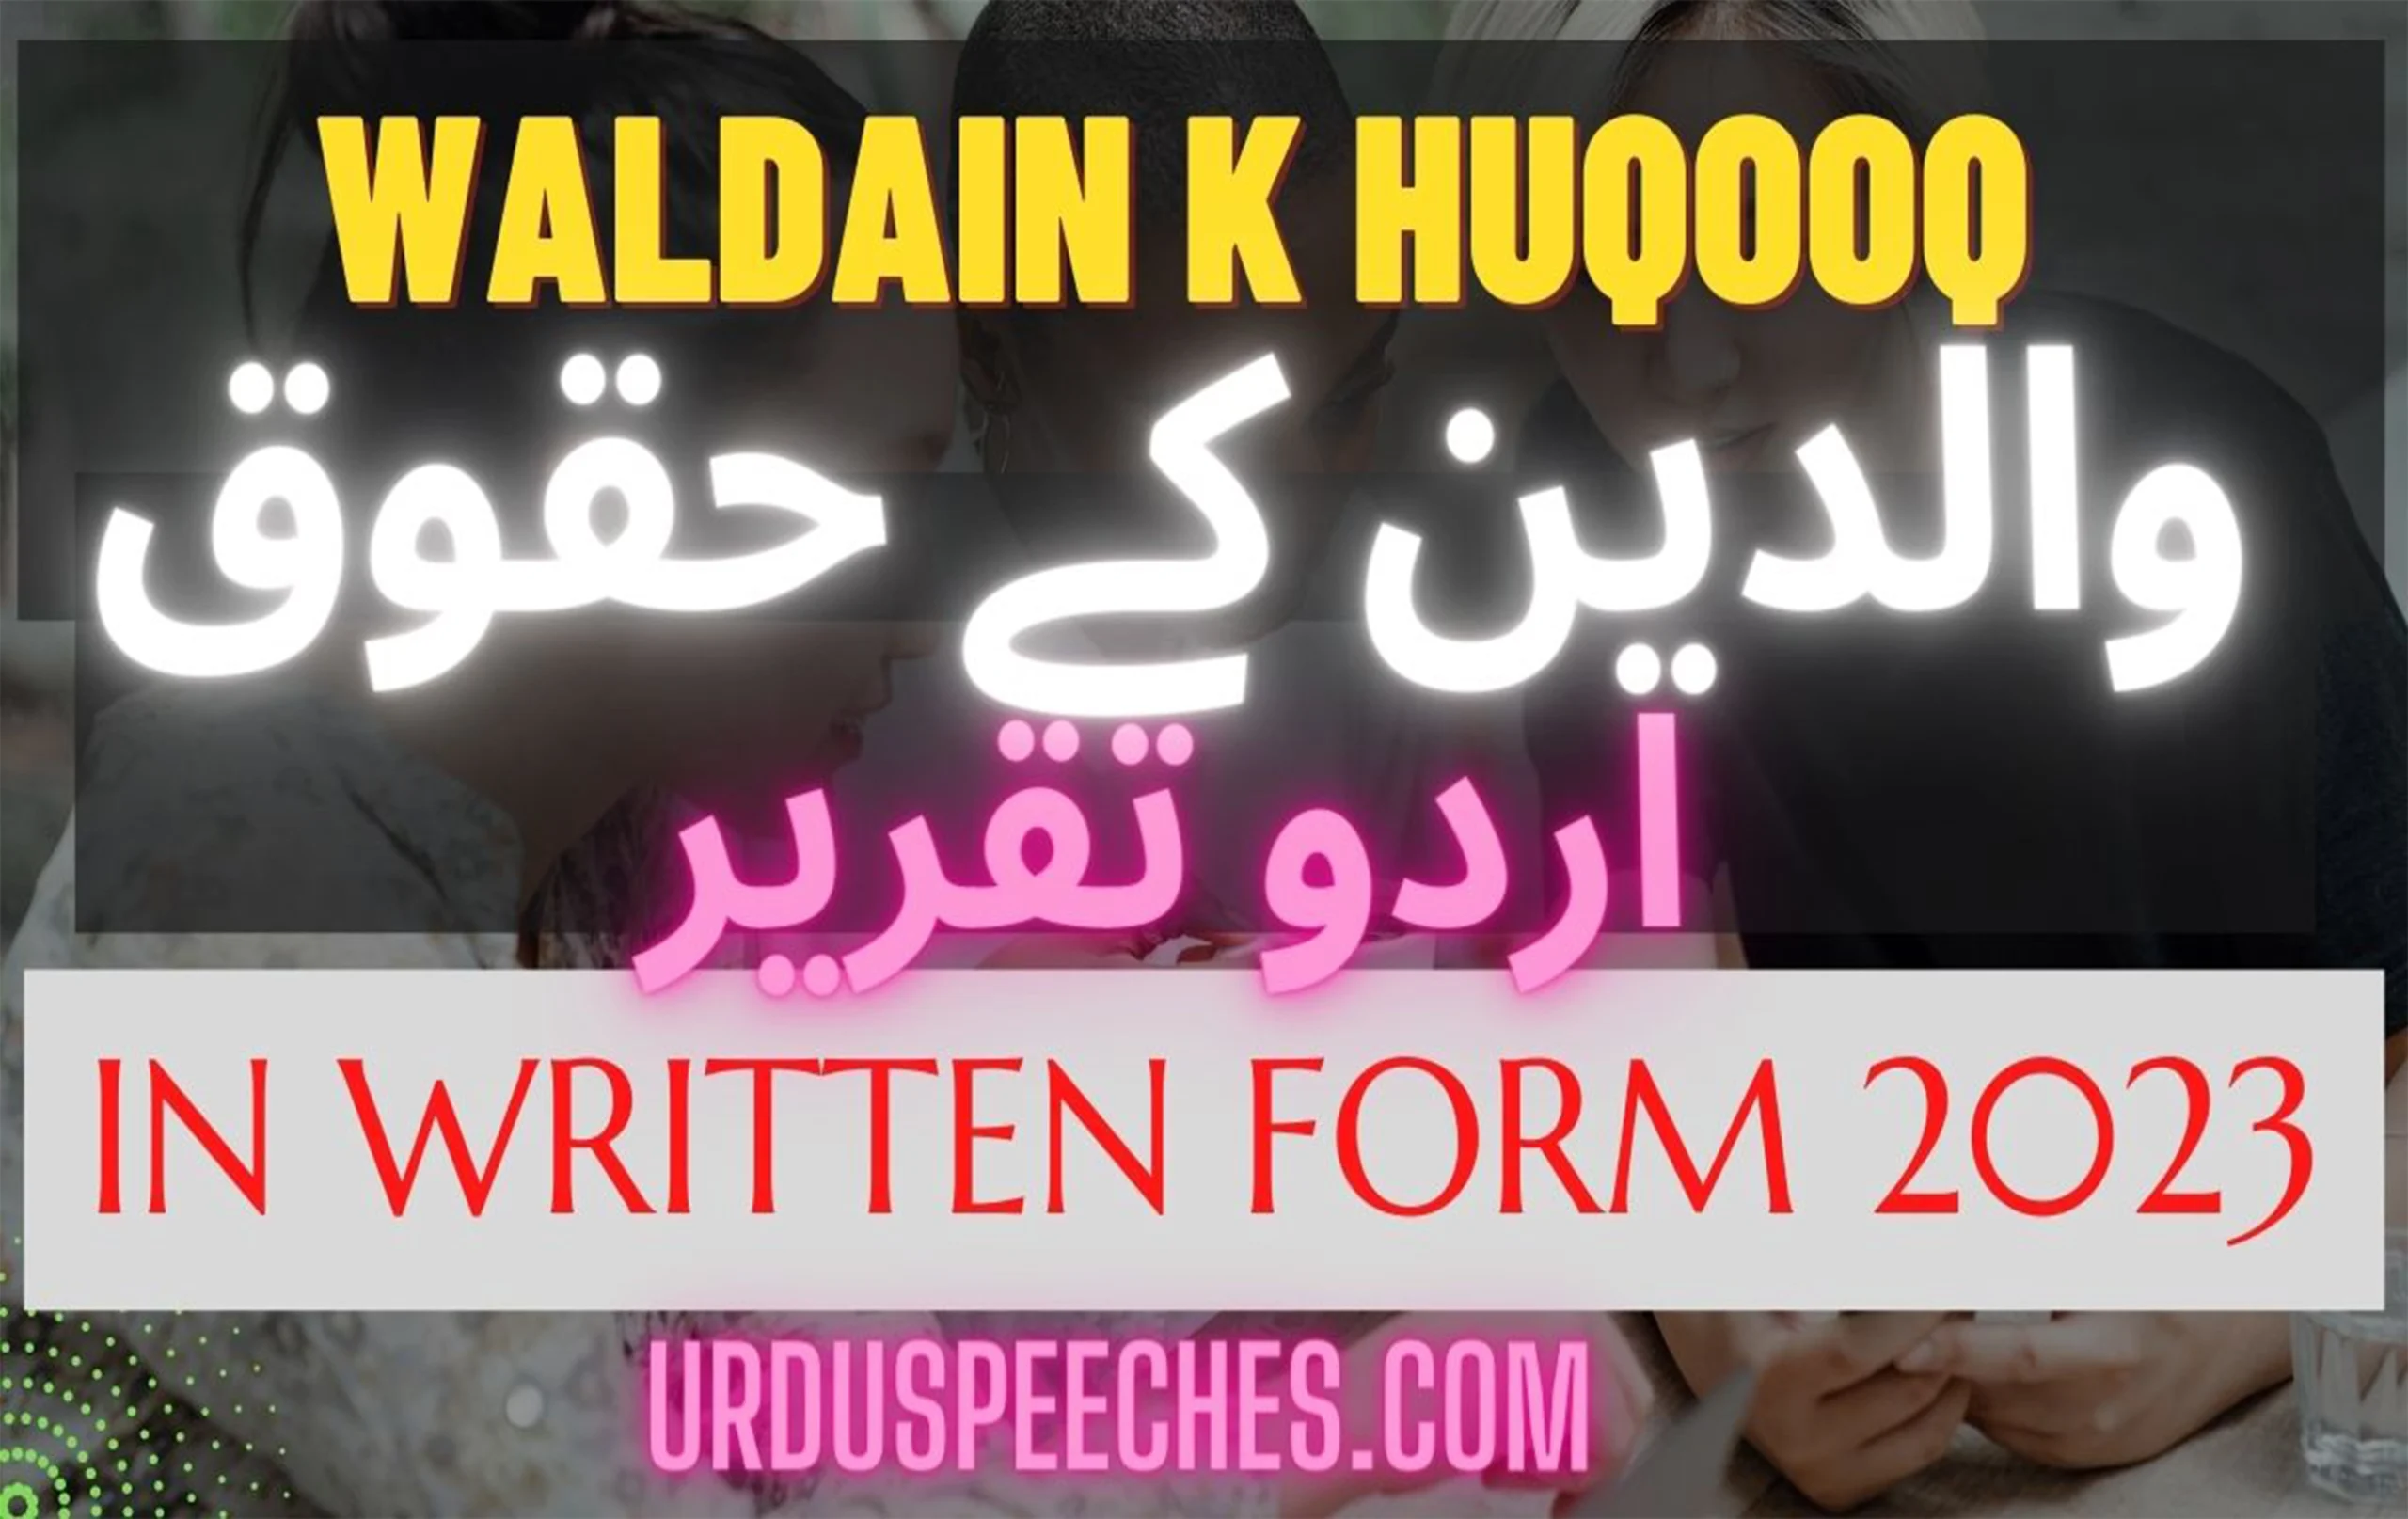 WALDAIN-KAY-HUQOOQ-URDU-SPEECH-IN-WRITTEN-FORM